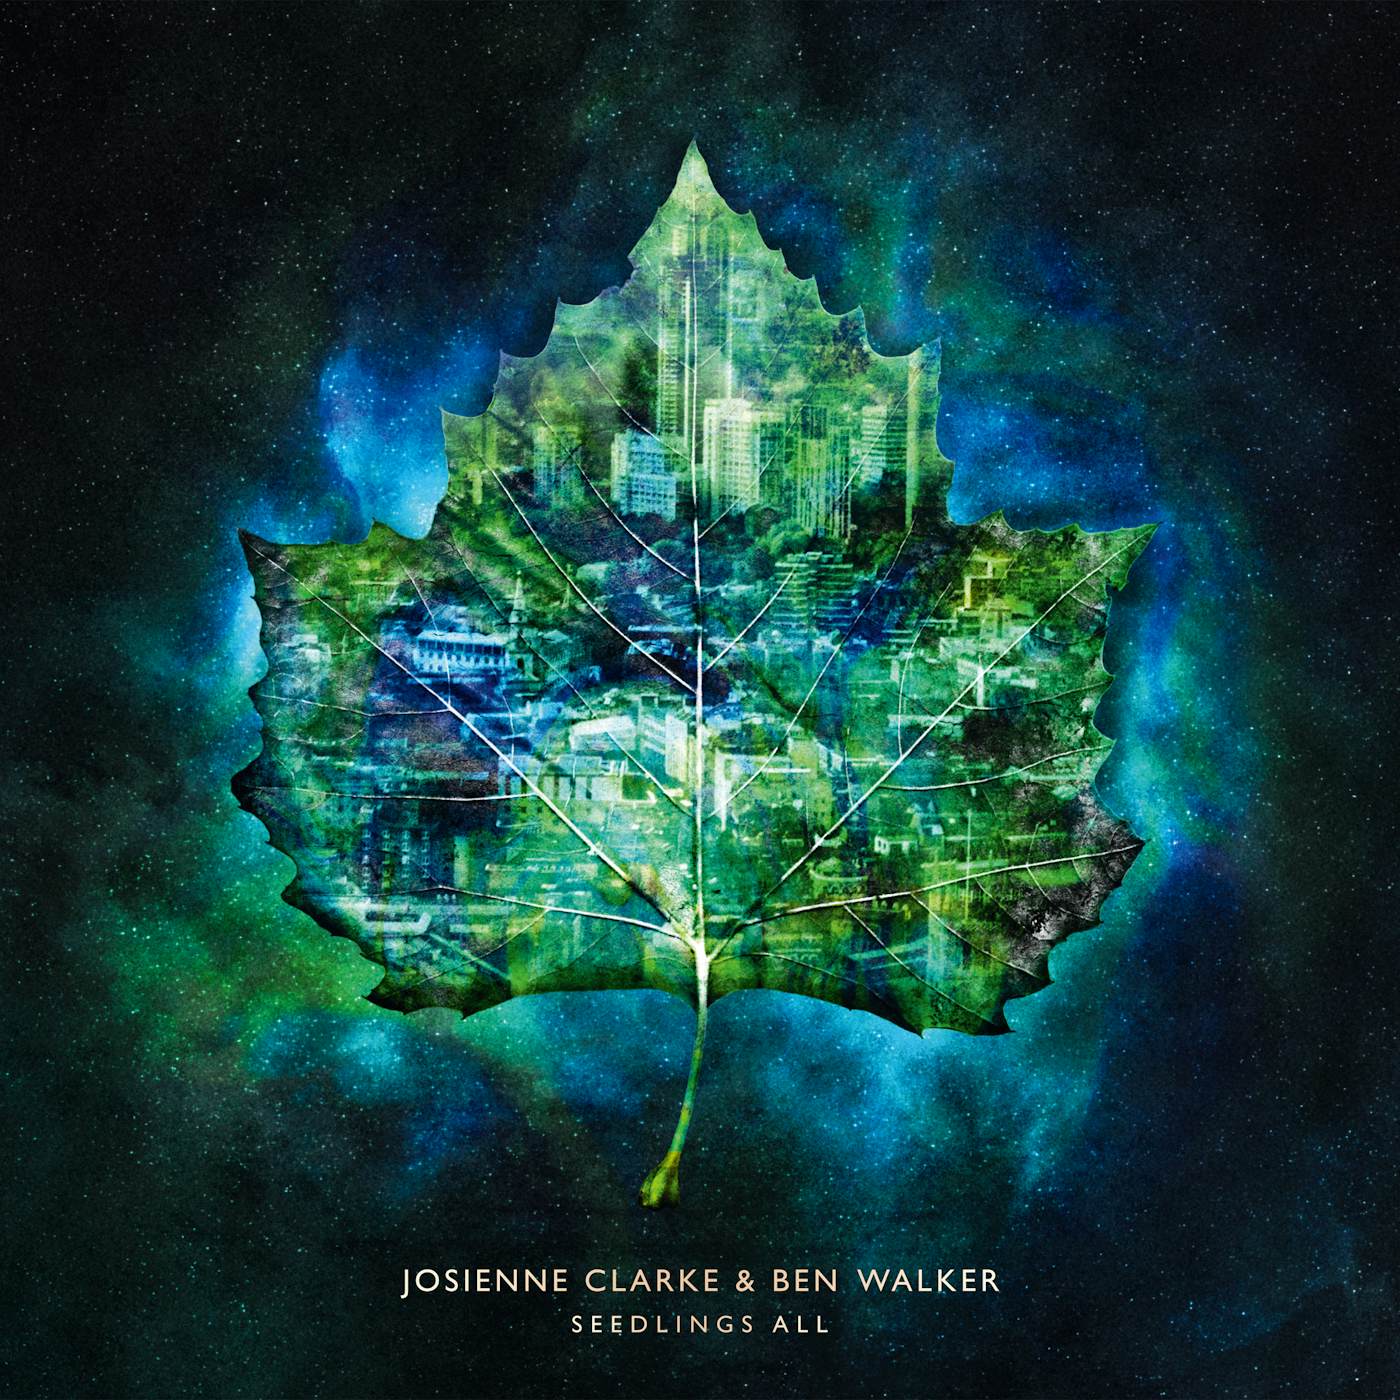 Josienne Clarke and Ben Walker SEEDLINGS CD